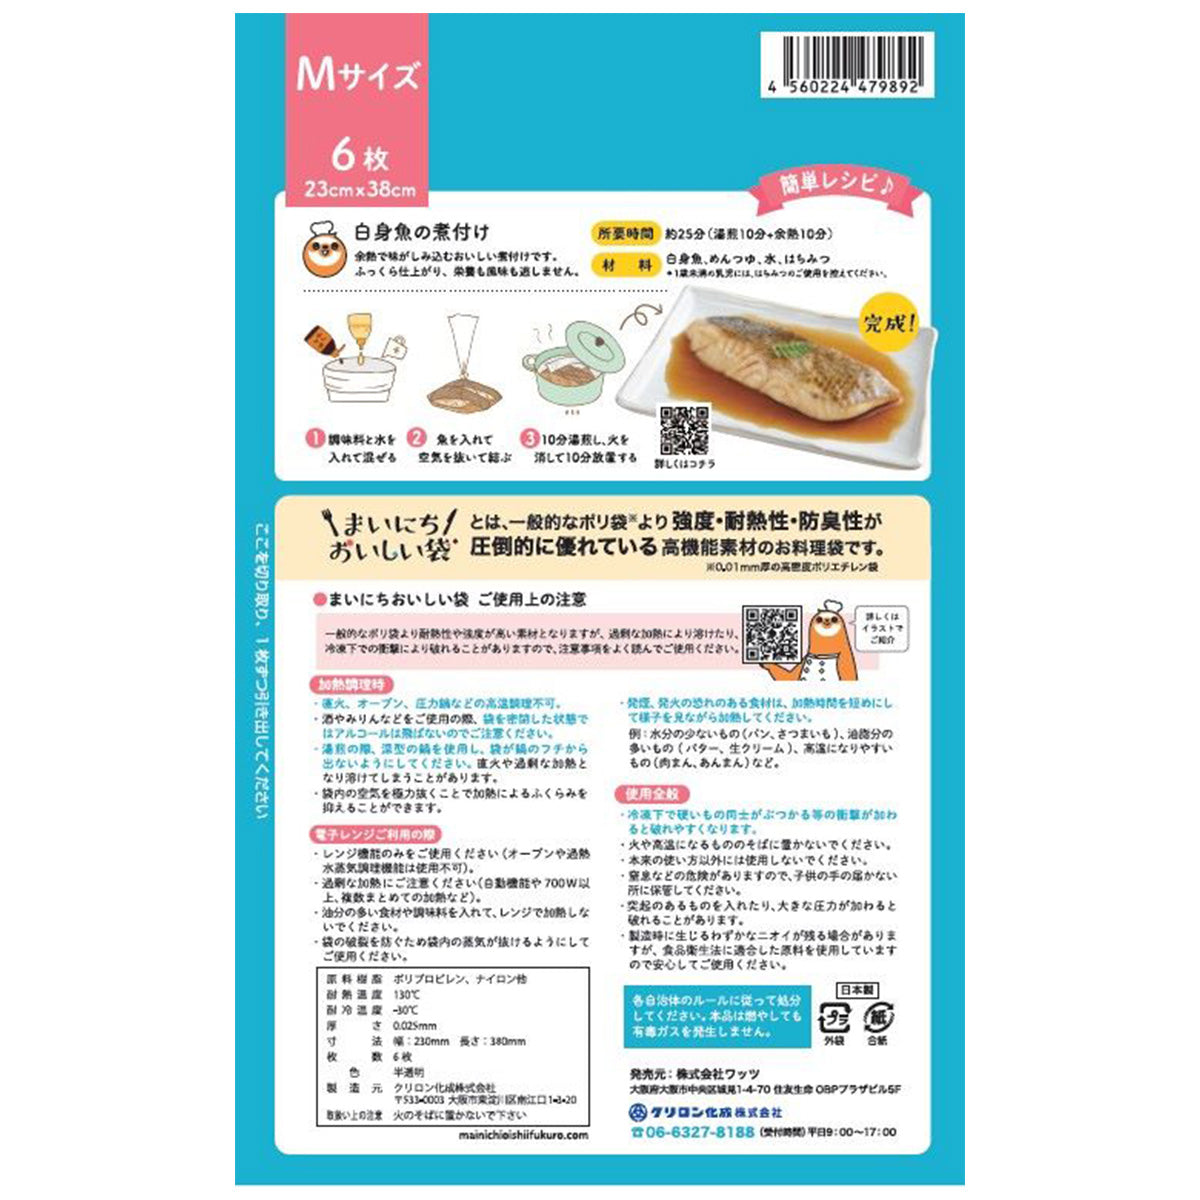 【OUTLET】食品保存袋 ストック袋 PB.まいにちおいしい袋M 6枚 338622